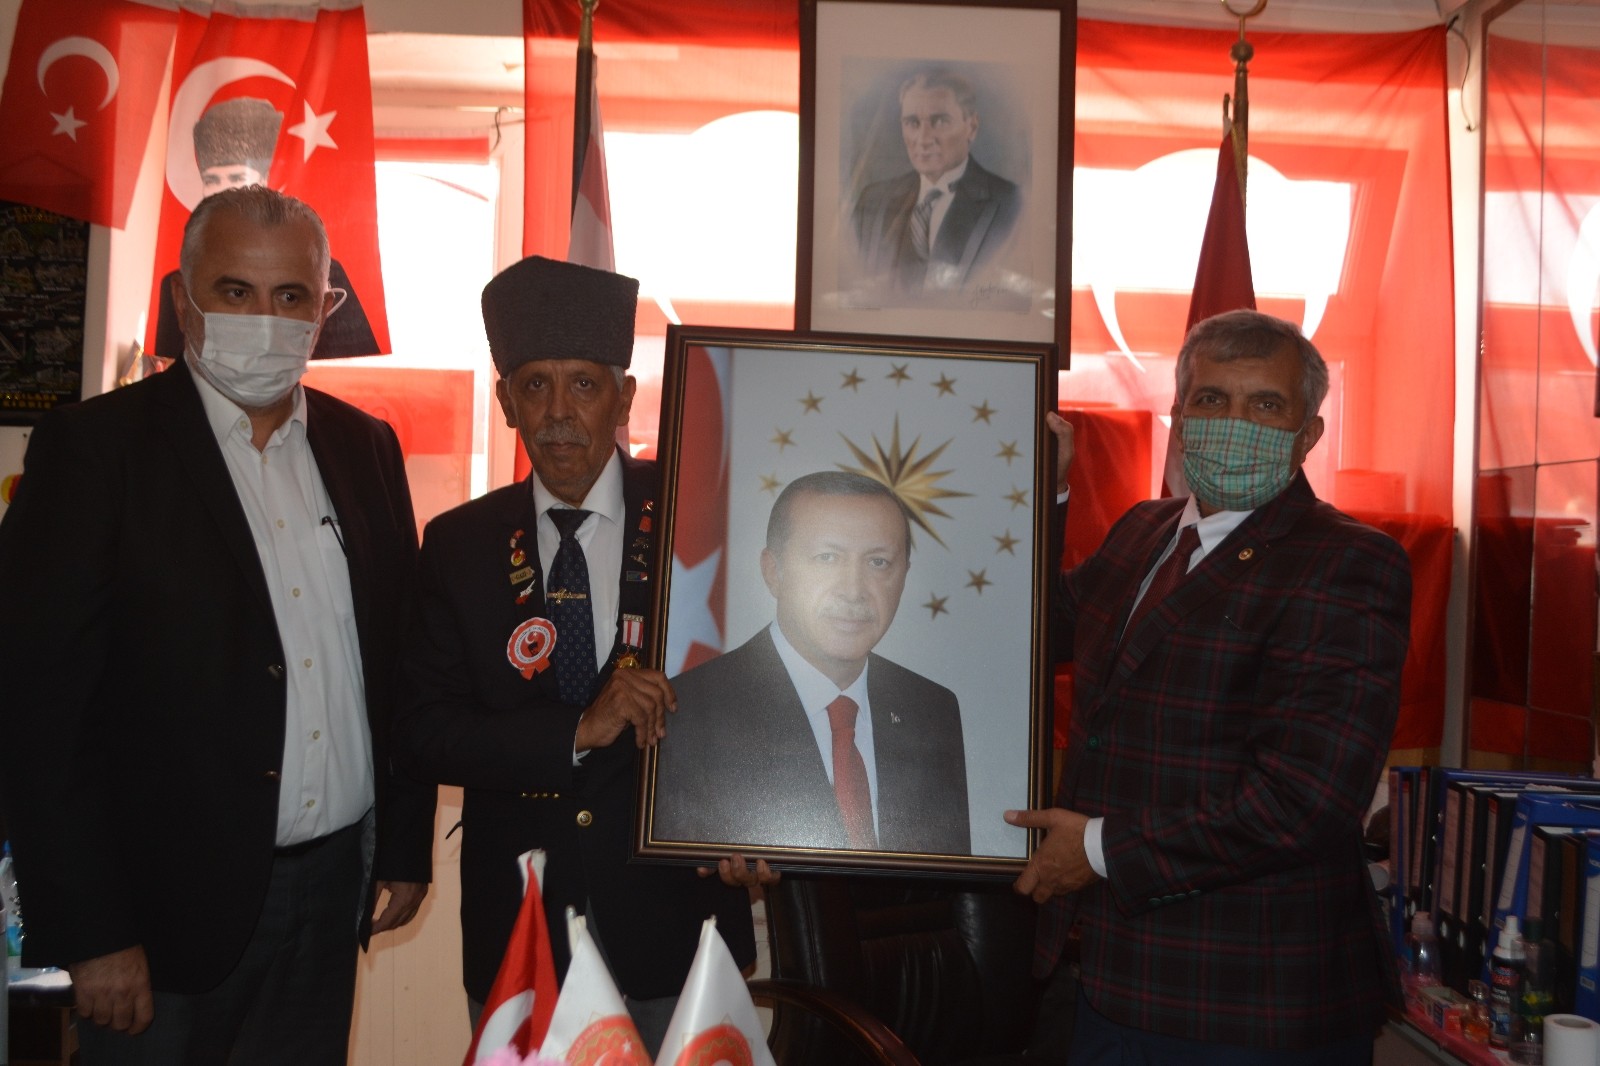 Gazilere Cumhurbaşkanı Erdoğan’ın portresini hediye etti